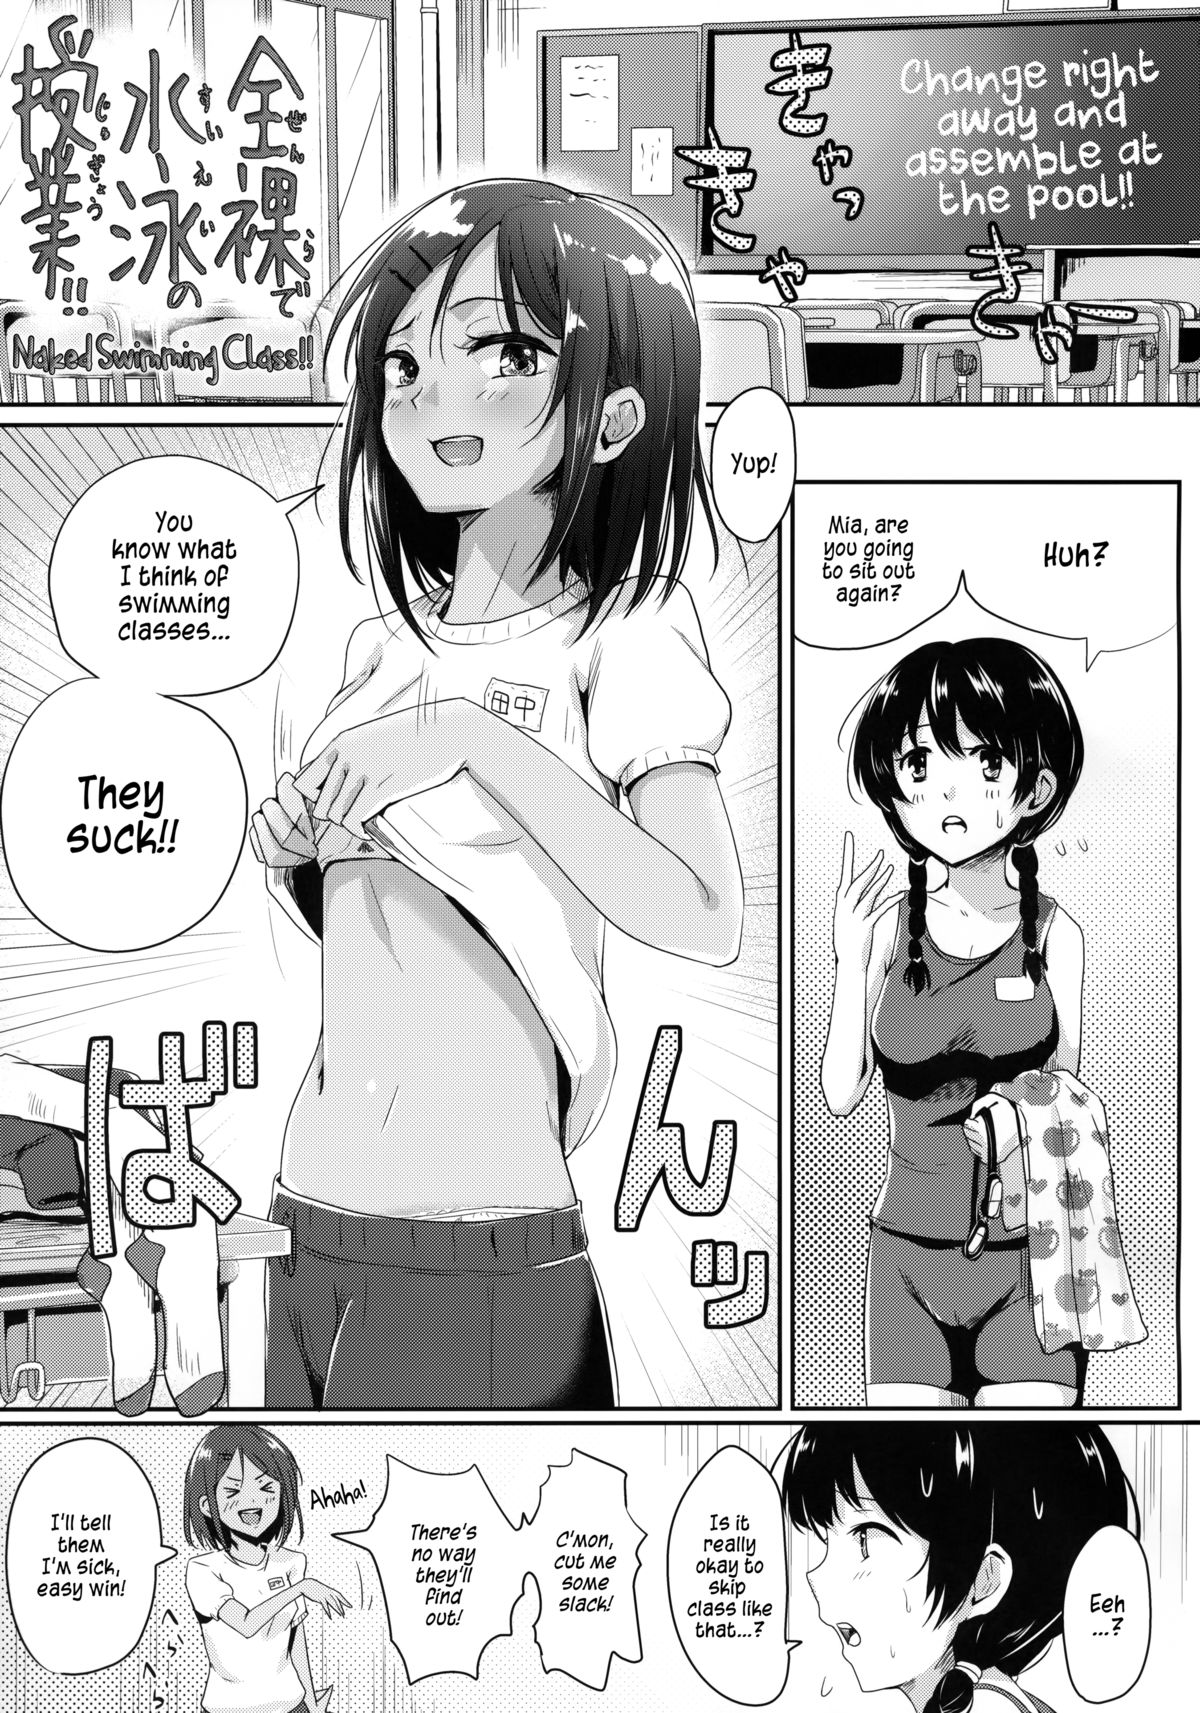 Japanese manga girl nude in pool